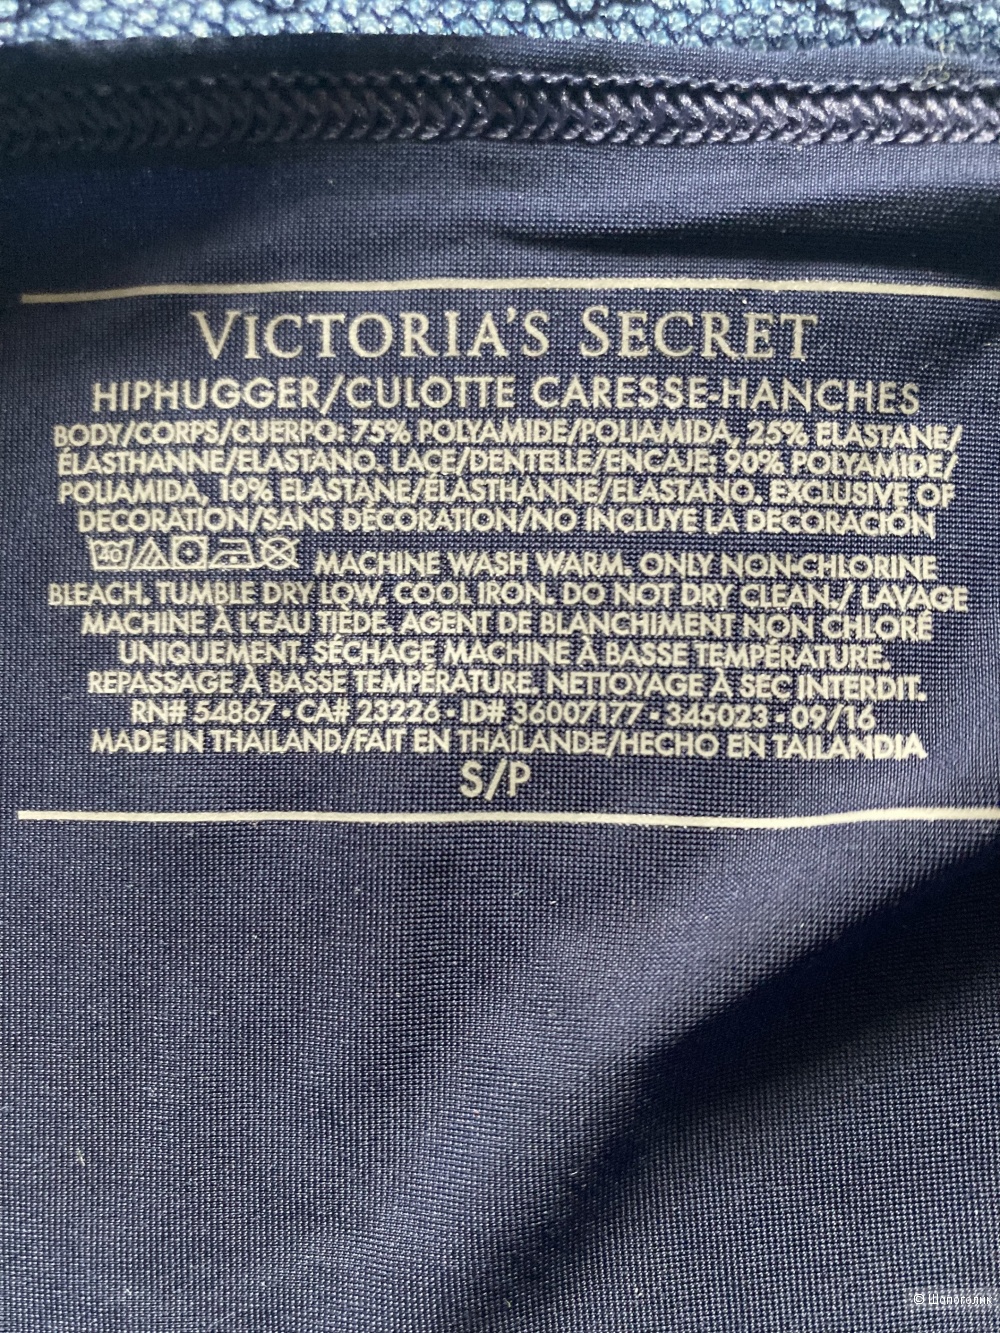 Плавки, Victoria's secret, S